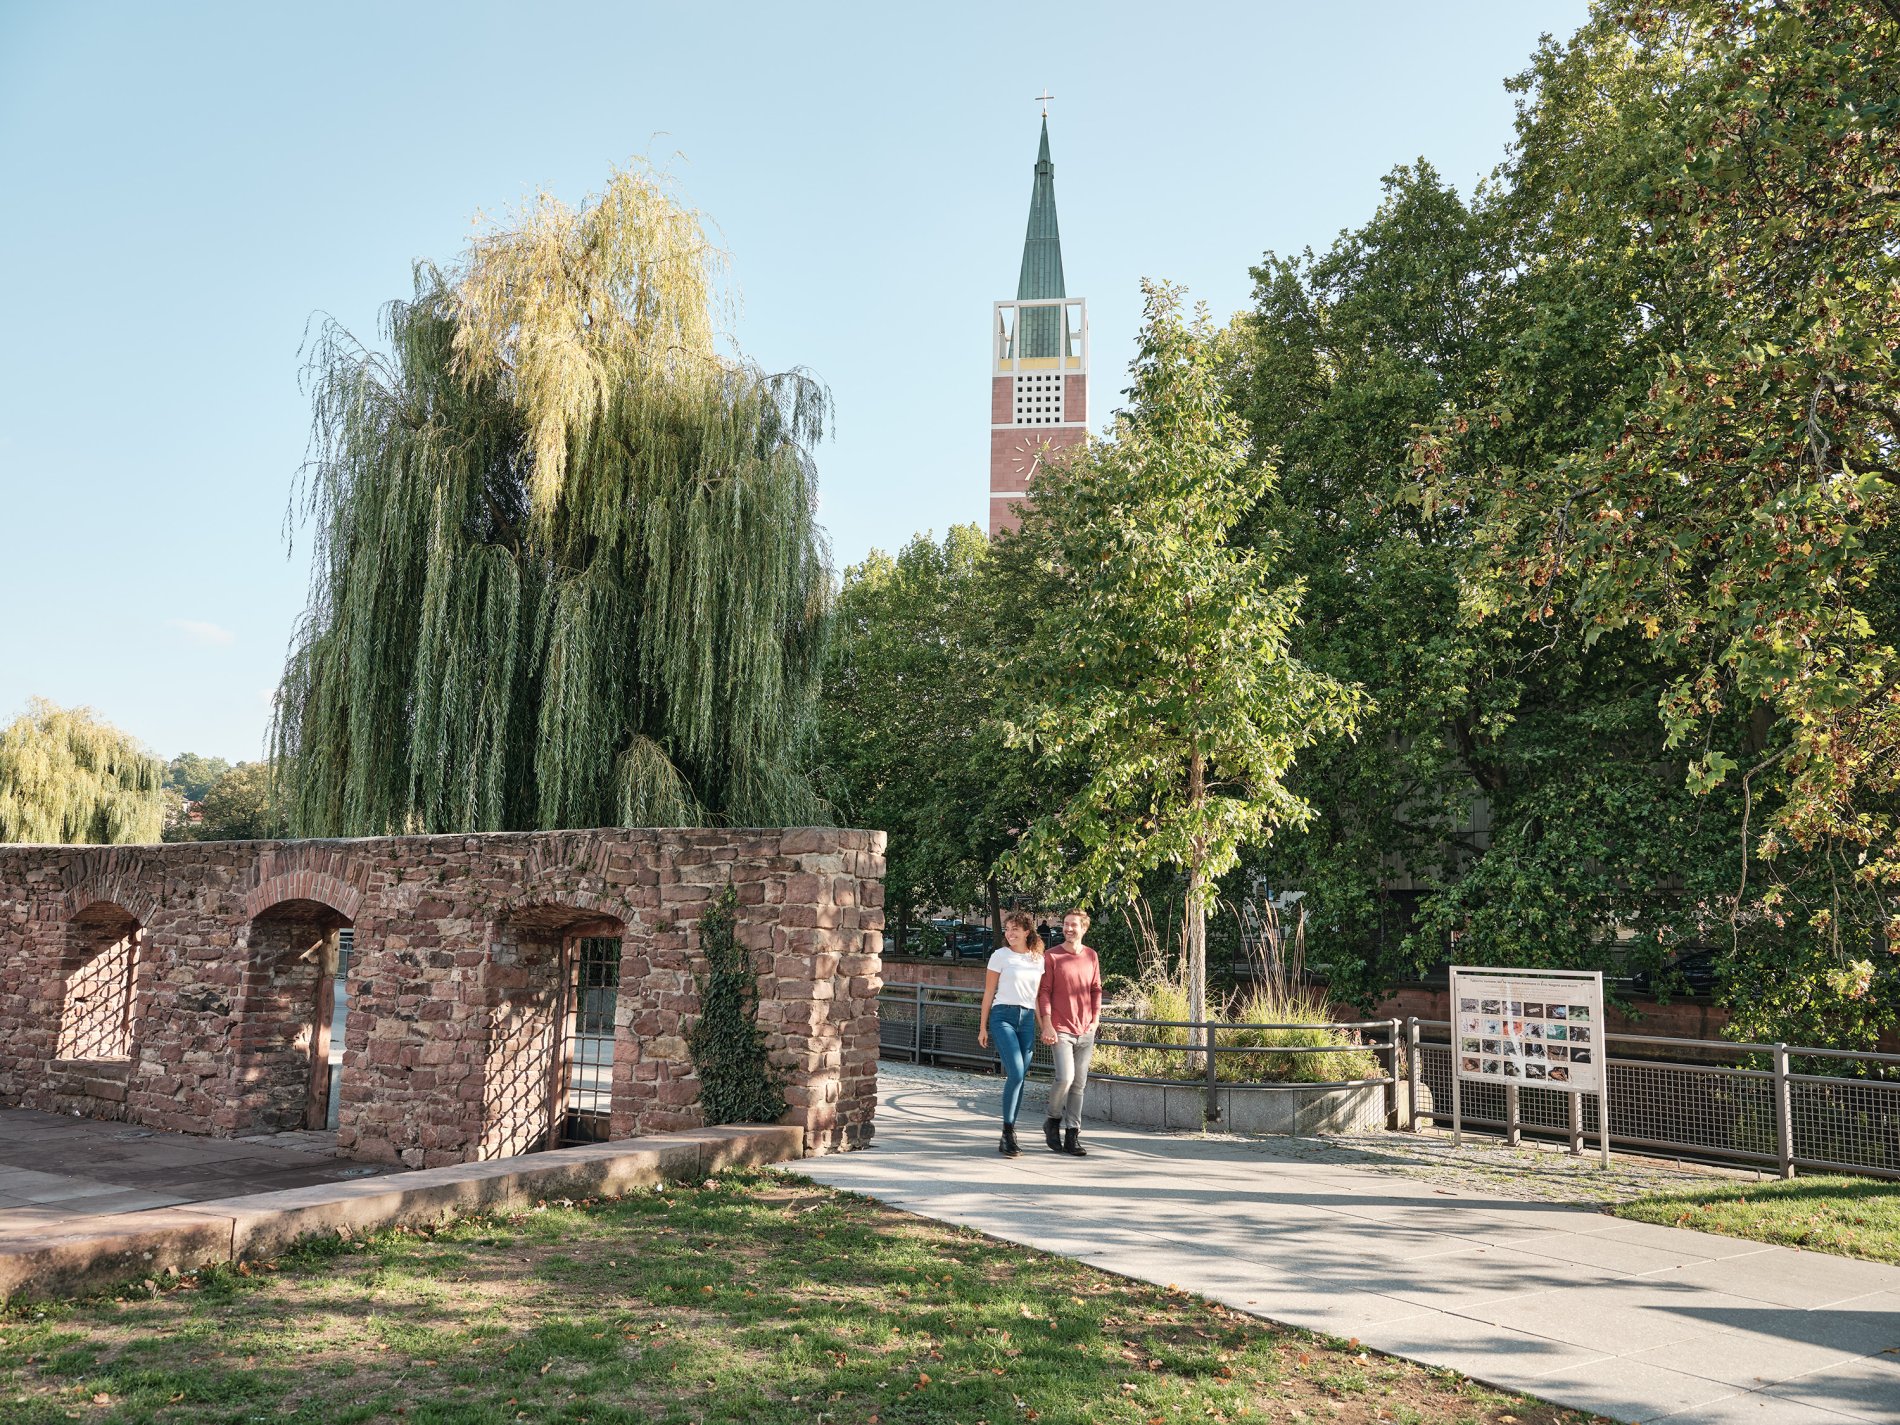 Spaziergehendes Paar mit Mauerresten an der Seite und Stadtkirche im Hintergrund.